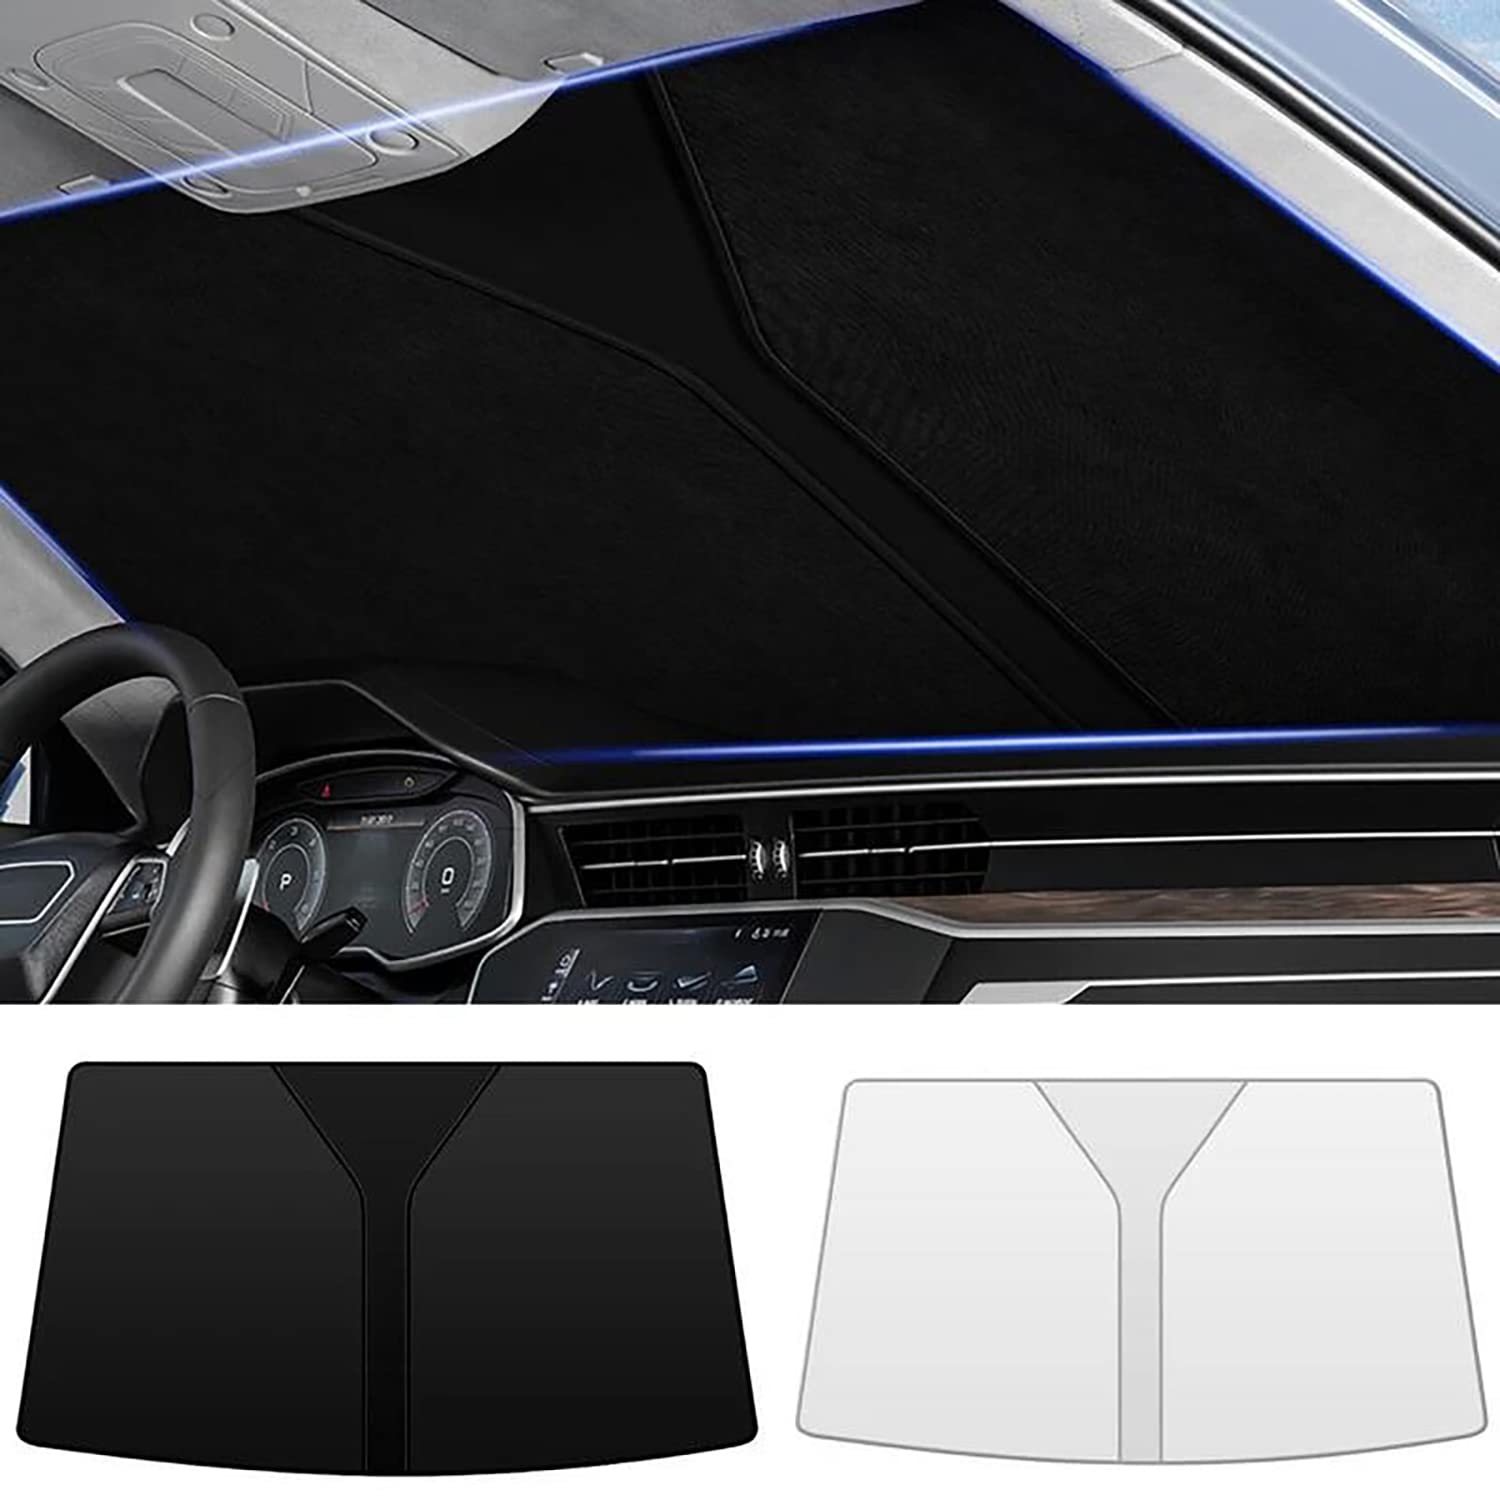 Frontscheiben Sonnenschutz Passend für Ford C-MAX Ⅱ 2010 2011 2012 2013 2014 2015-2019, Hitzeschutz Auto UV-Reflexion, Faltbares Design, Einfache Lagerung,- Black von TANEND